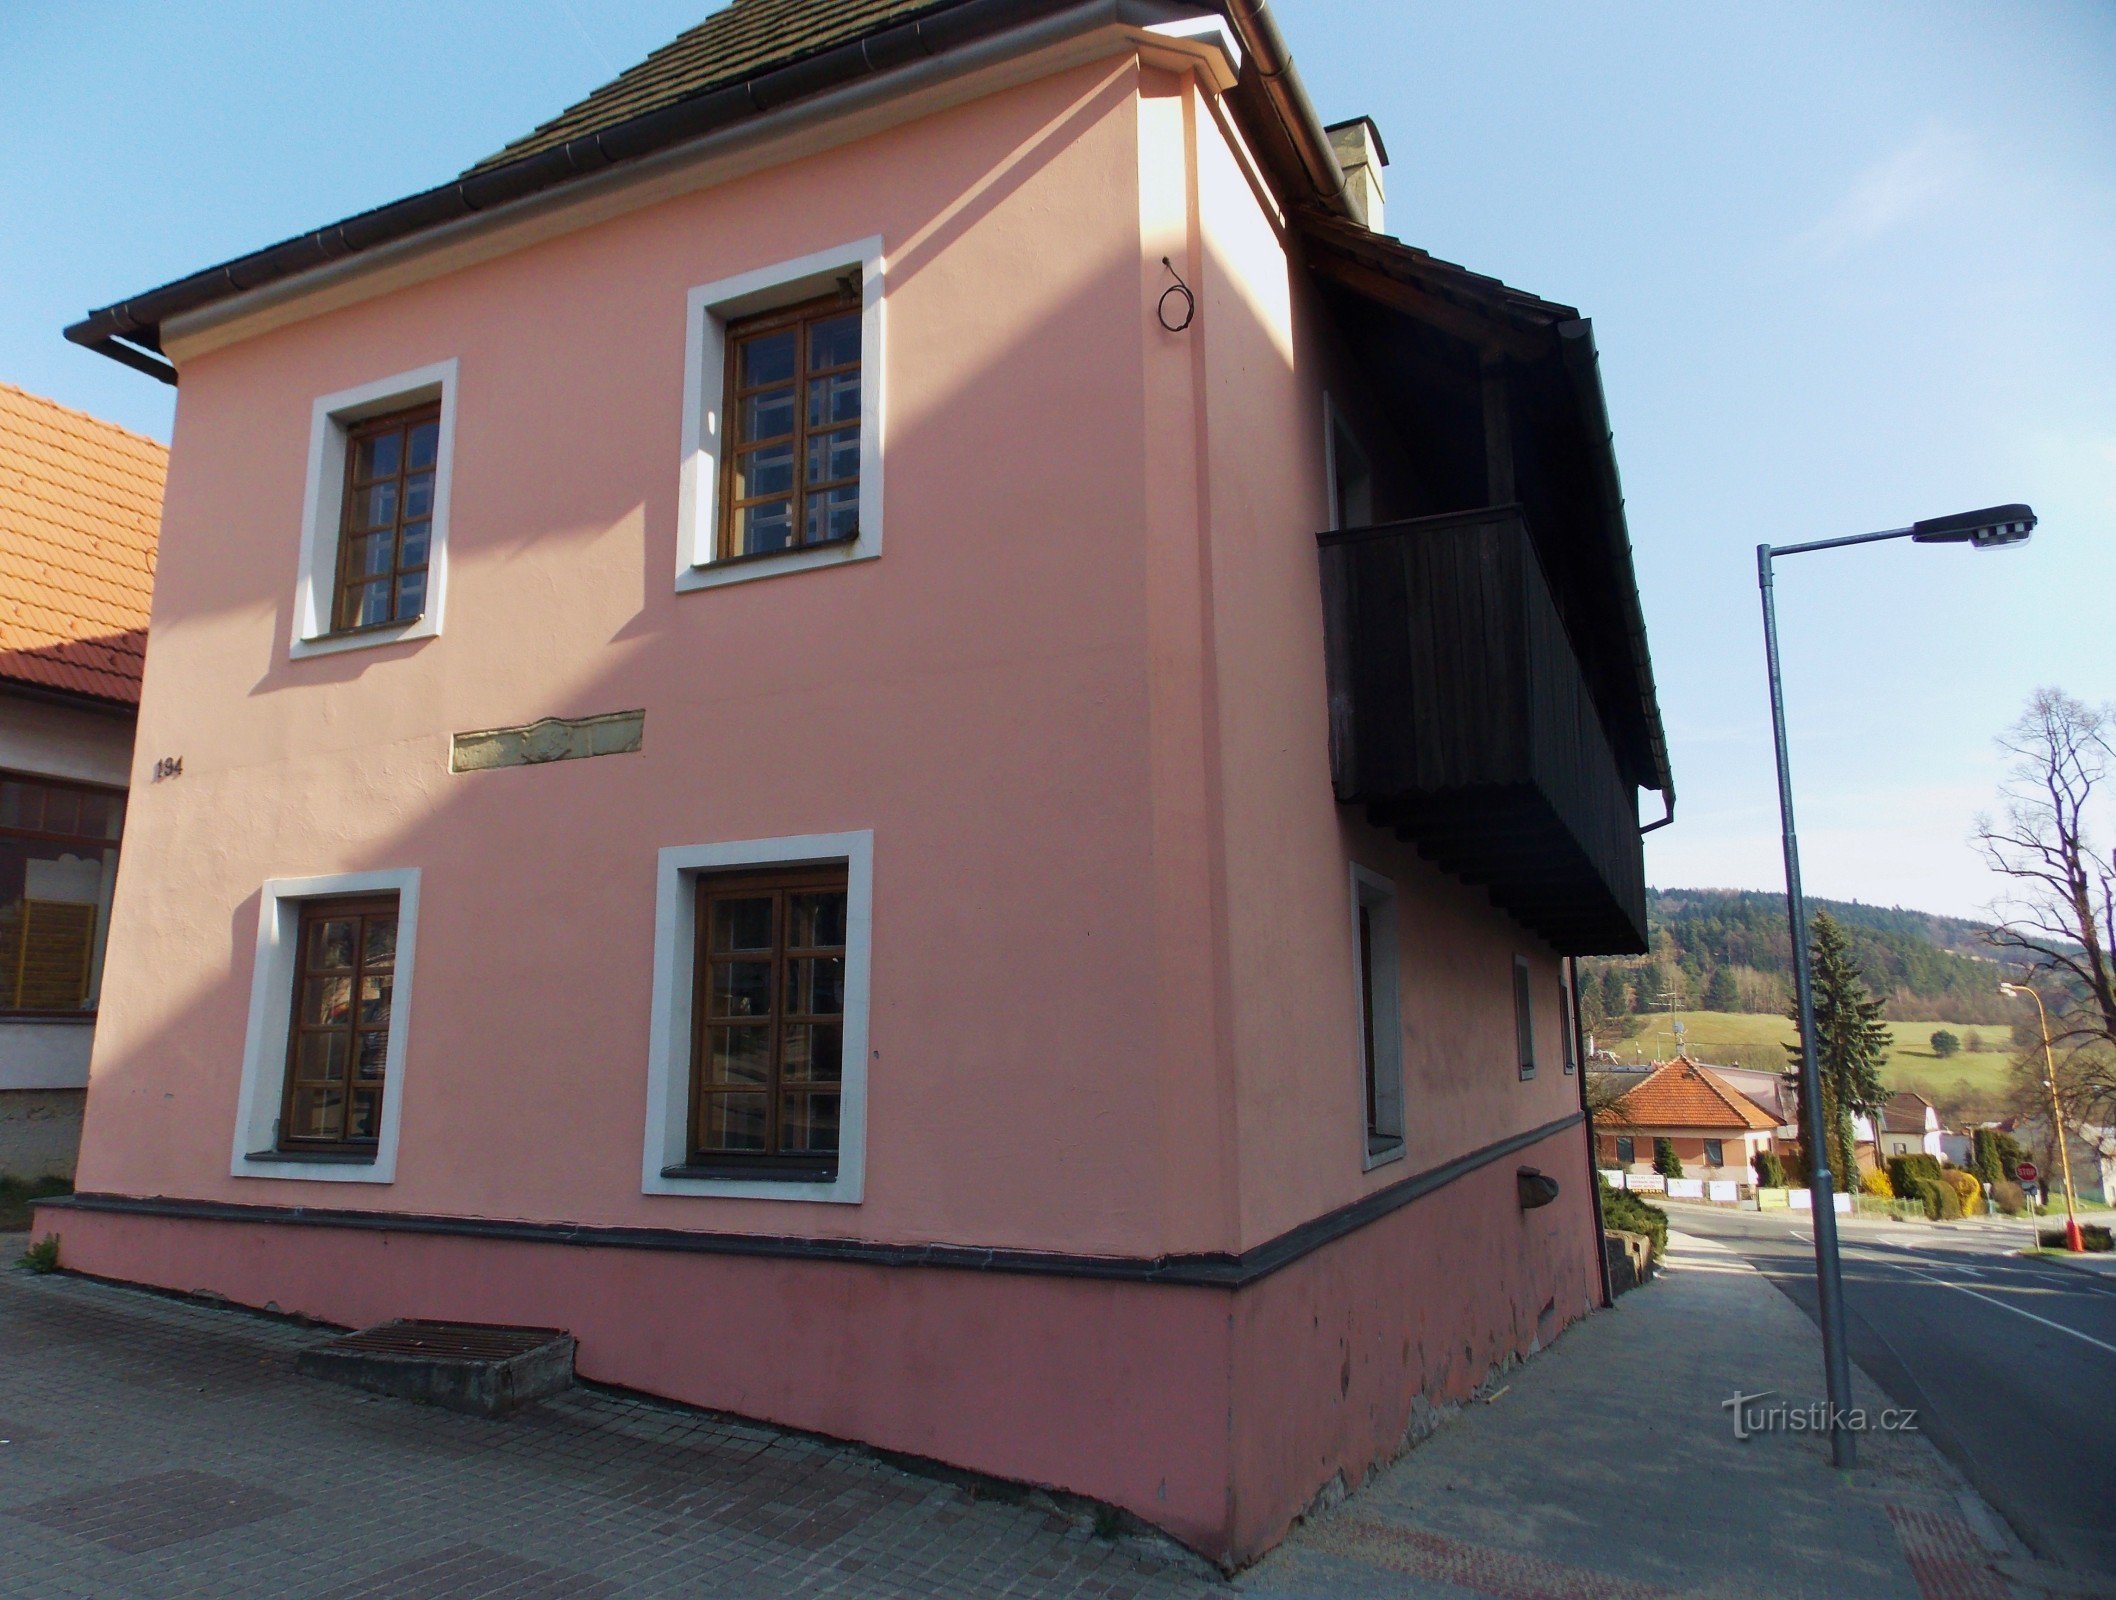 Das Rote Haus, das zweite Objekt des Museums in Valašské Klobouky